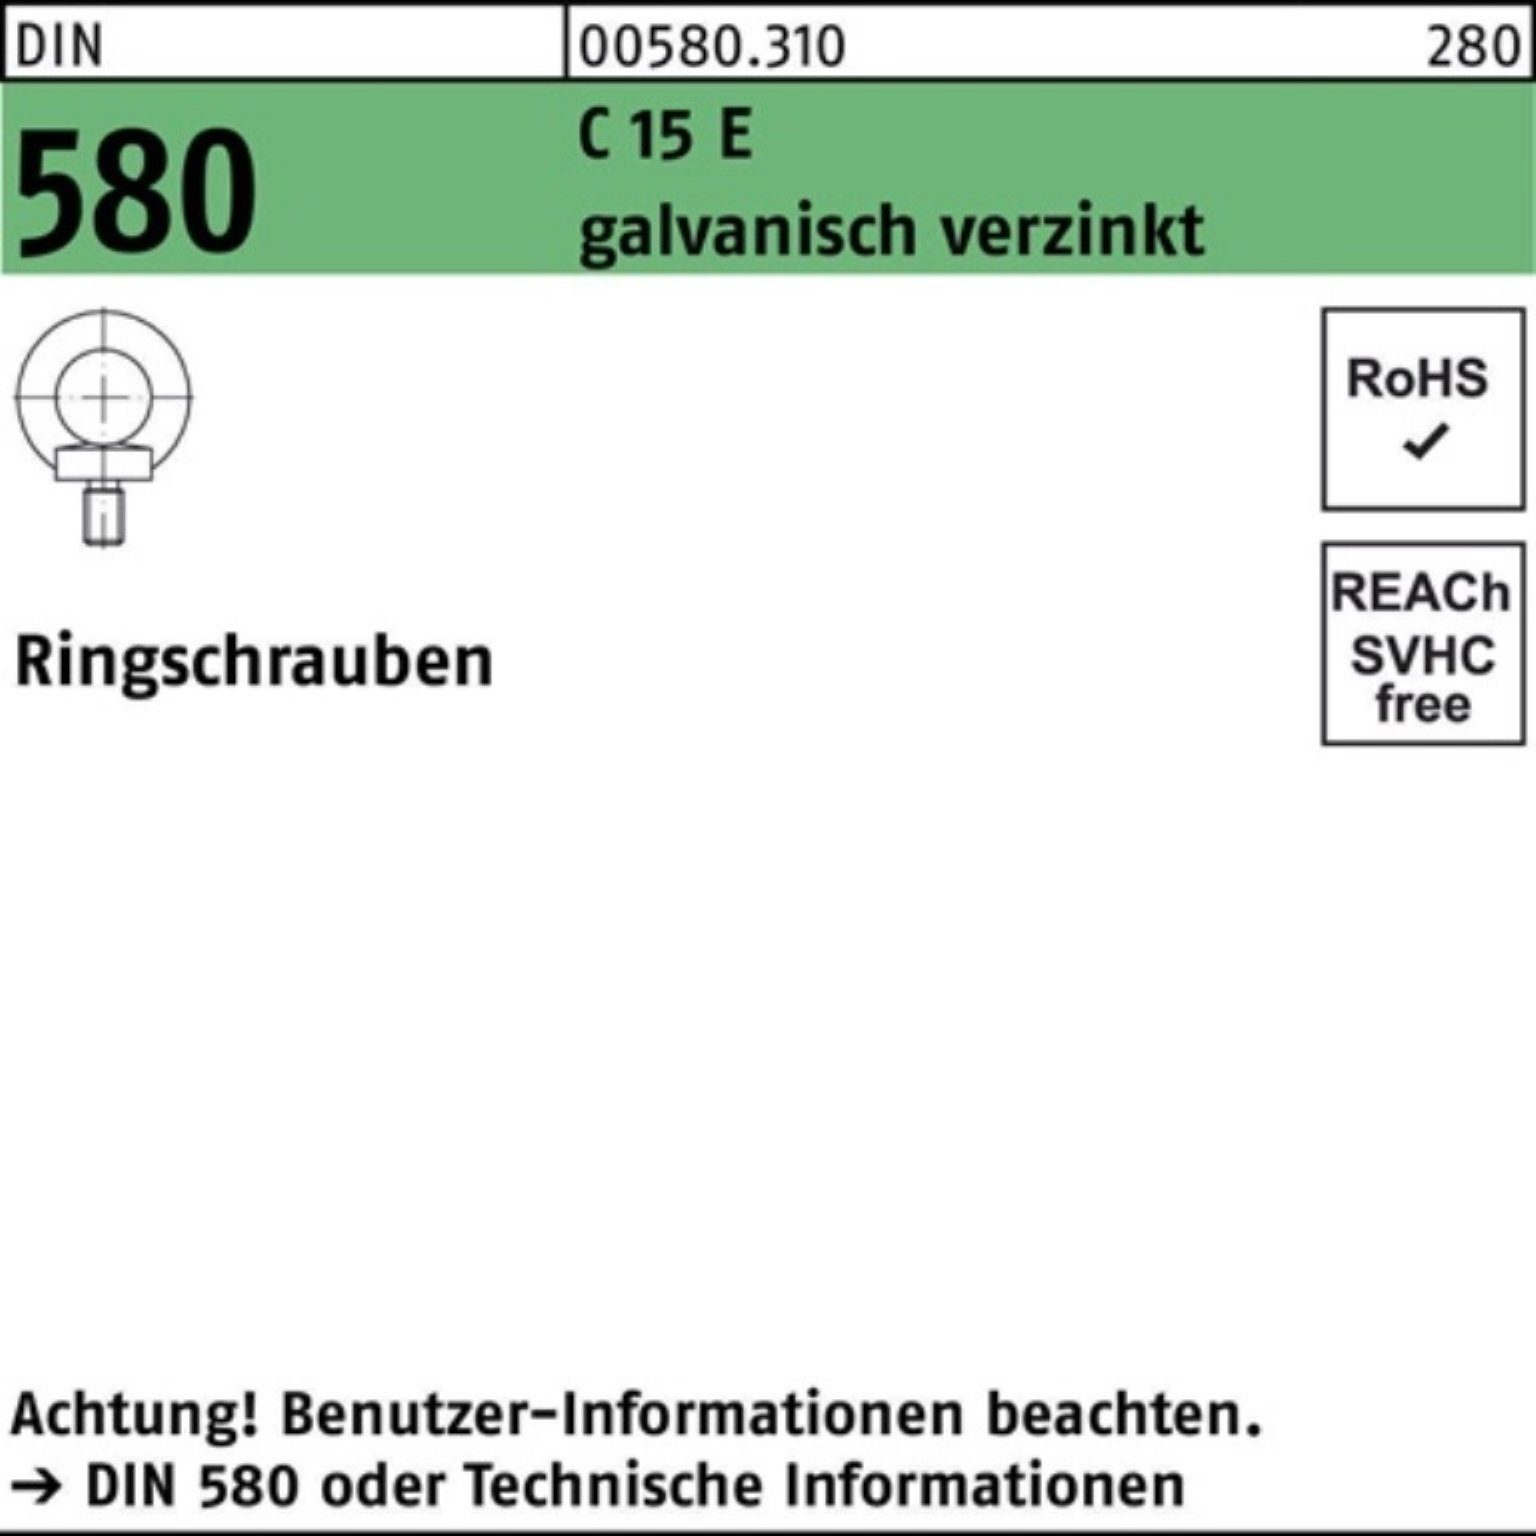 Reyher Schraube 100er Pack Ringschraube DIN 580 M42 C 15 E galv.verz. 1 Stück DIN 580